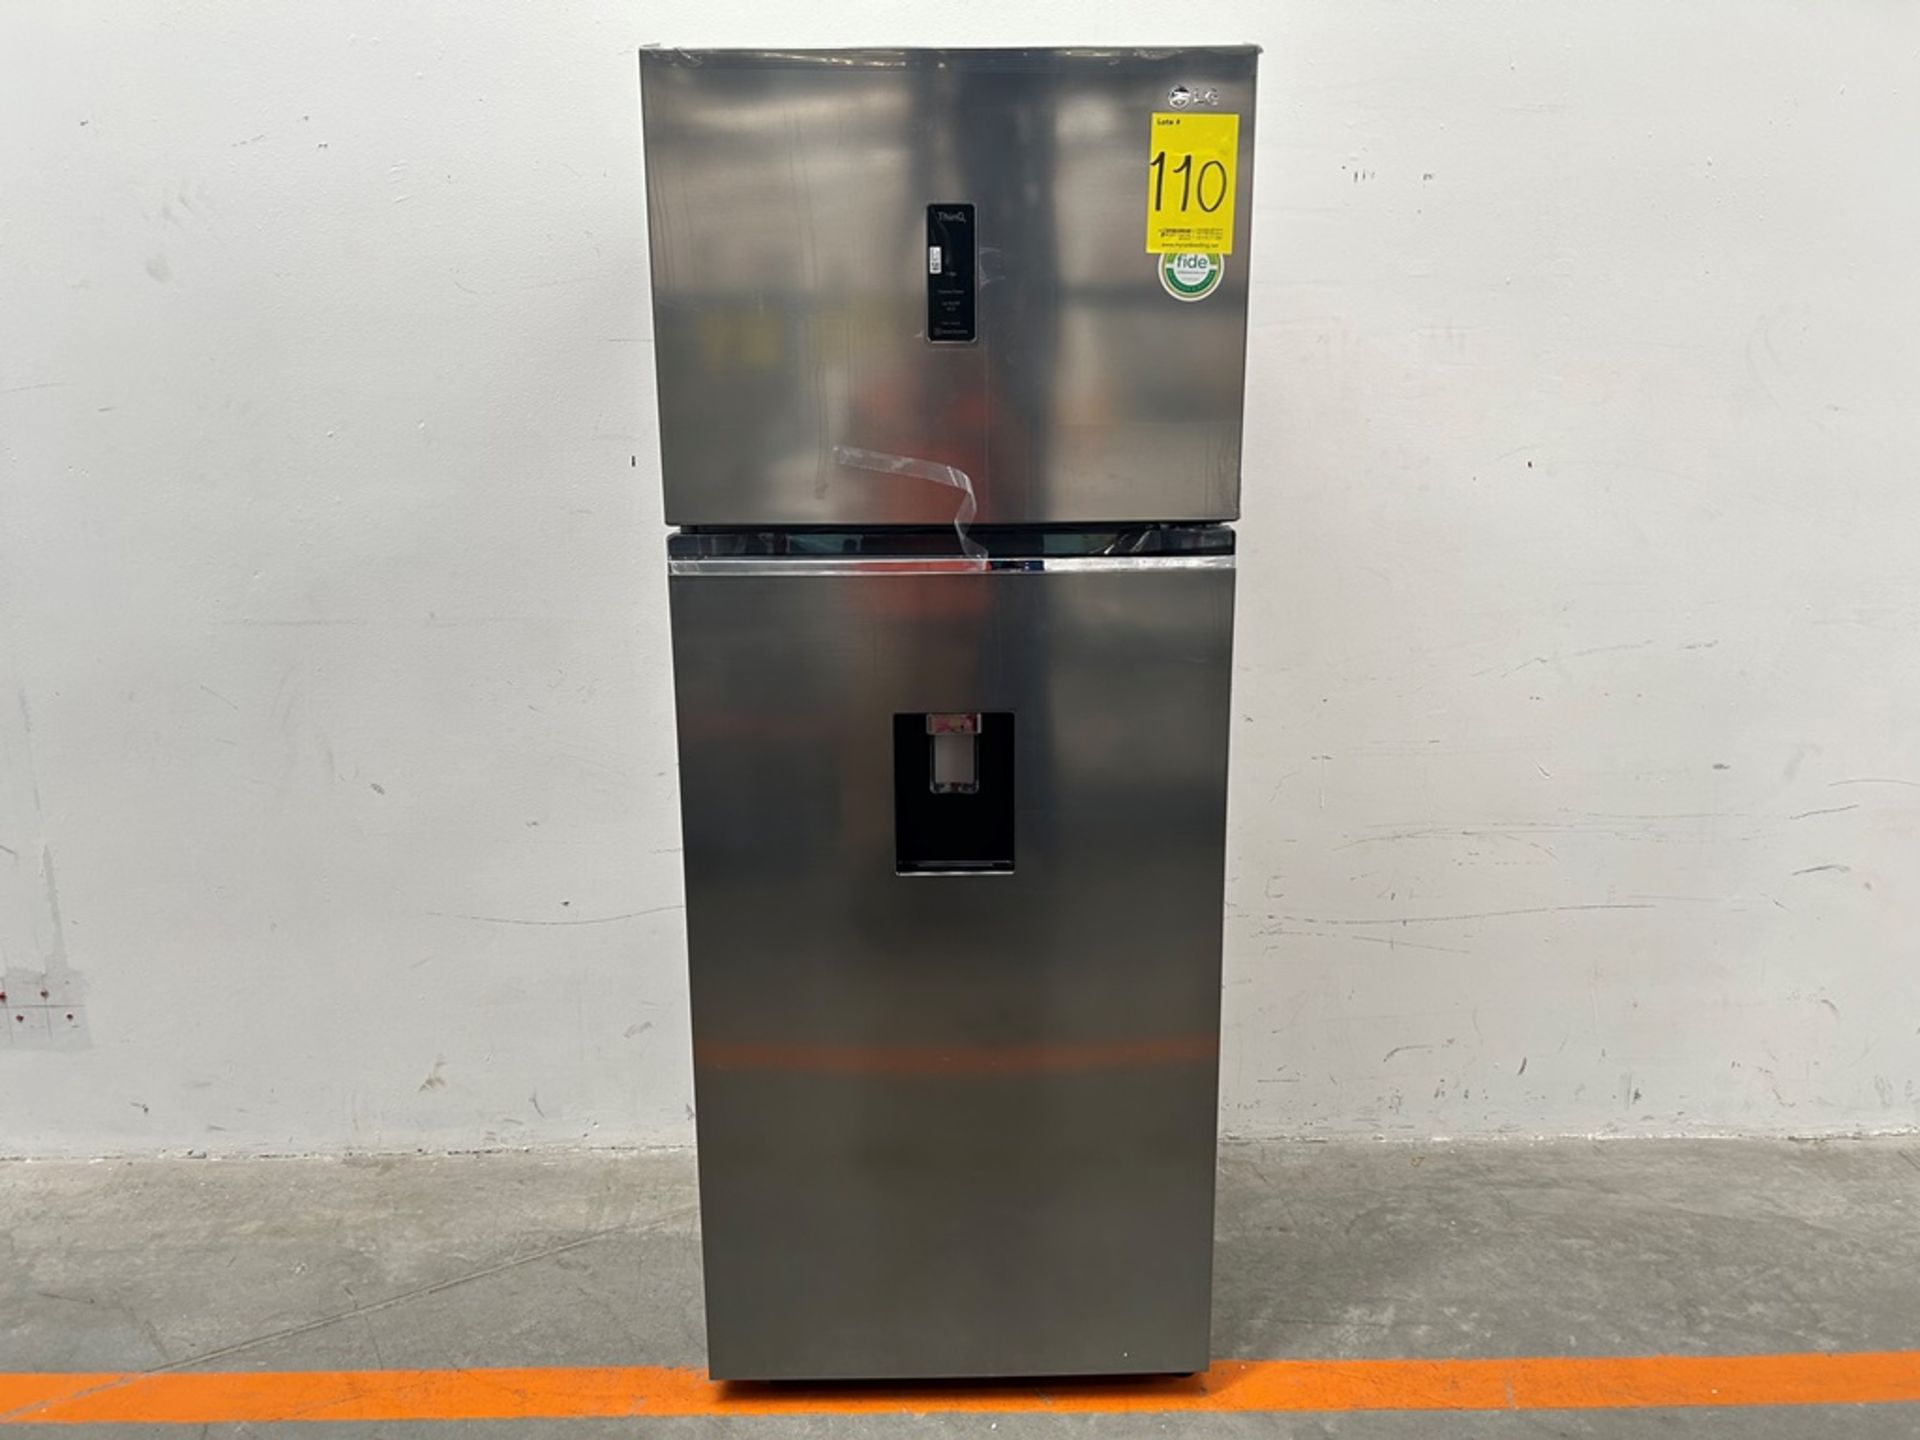 (NUEVO) Refrigerador con dispensador de agua Marca LG, Modelo VT40AWP, Serie 1S414, Color GRIS